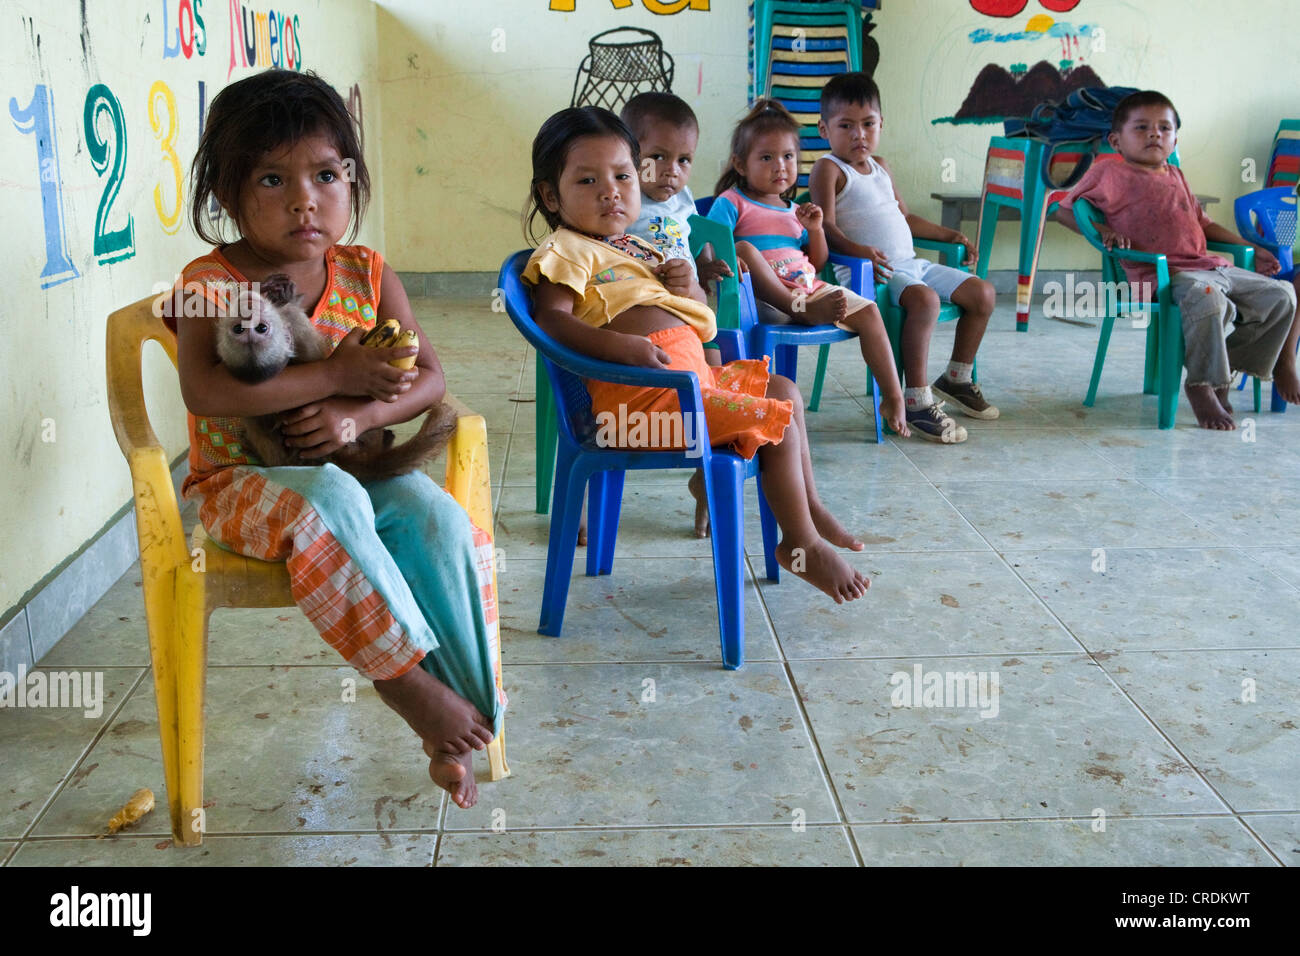 Los niños en un centro preescolar, una niña es la celebración de un mono domesticado en brazos, en una escuela primaria en una aldea donde no hay acceso por carretera Foto de stock